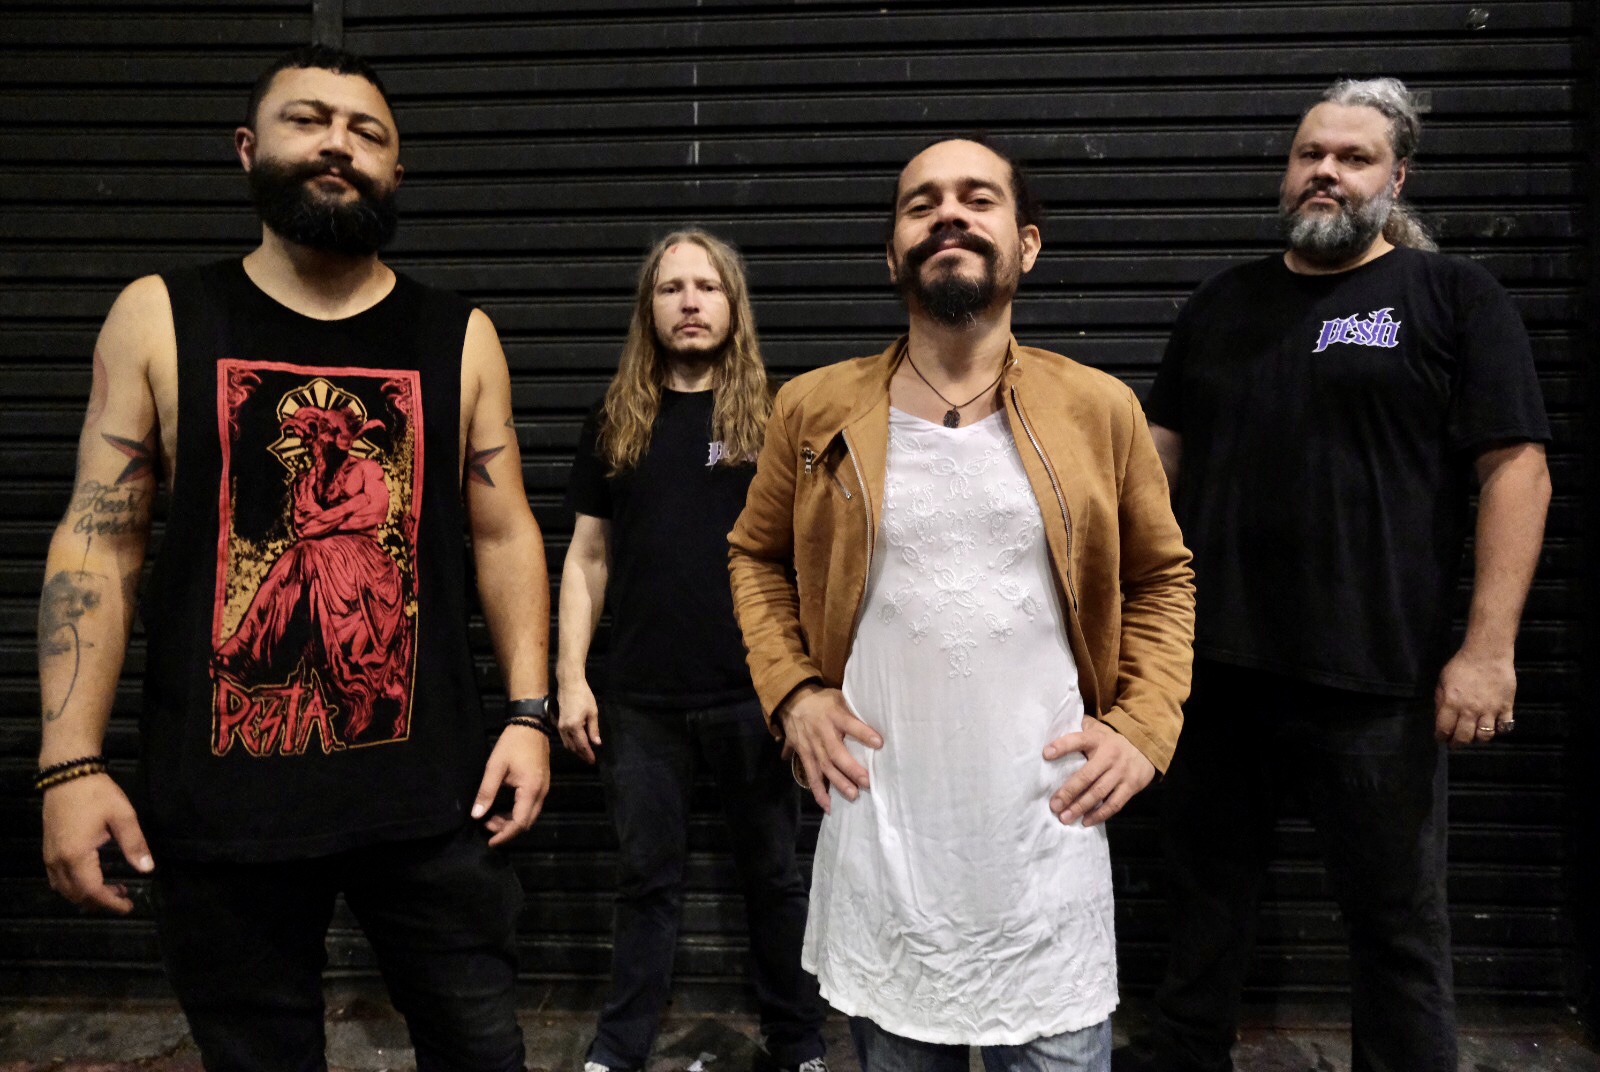 Pesta: Banda se apresenta ao lado de The Obsessed em Belo Horizonte e em São Paulo neste final de semana 